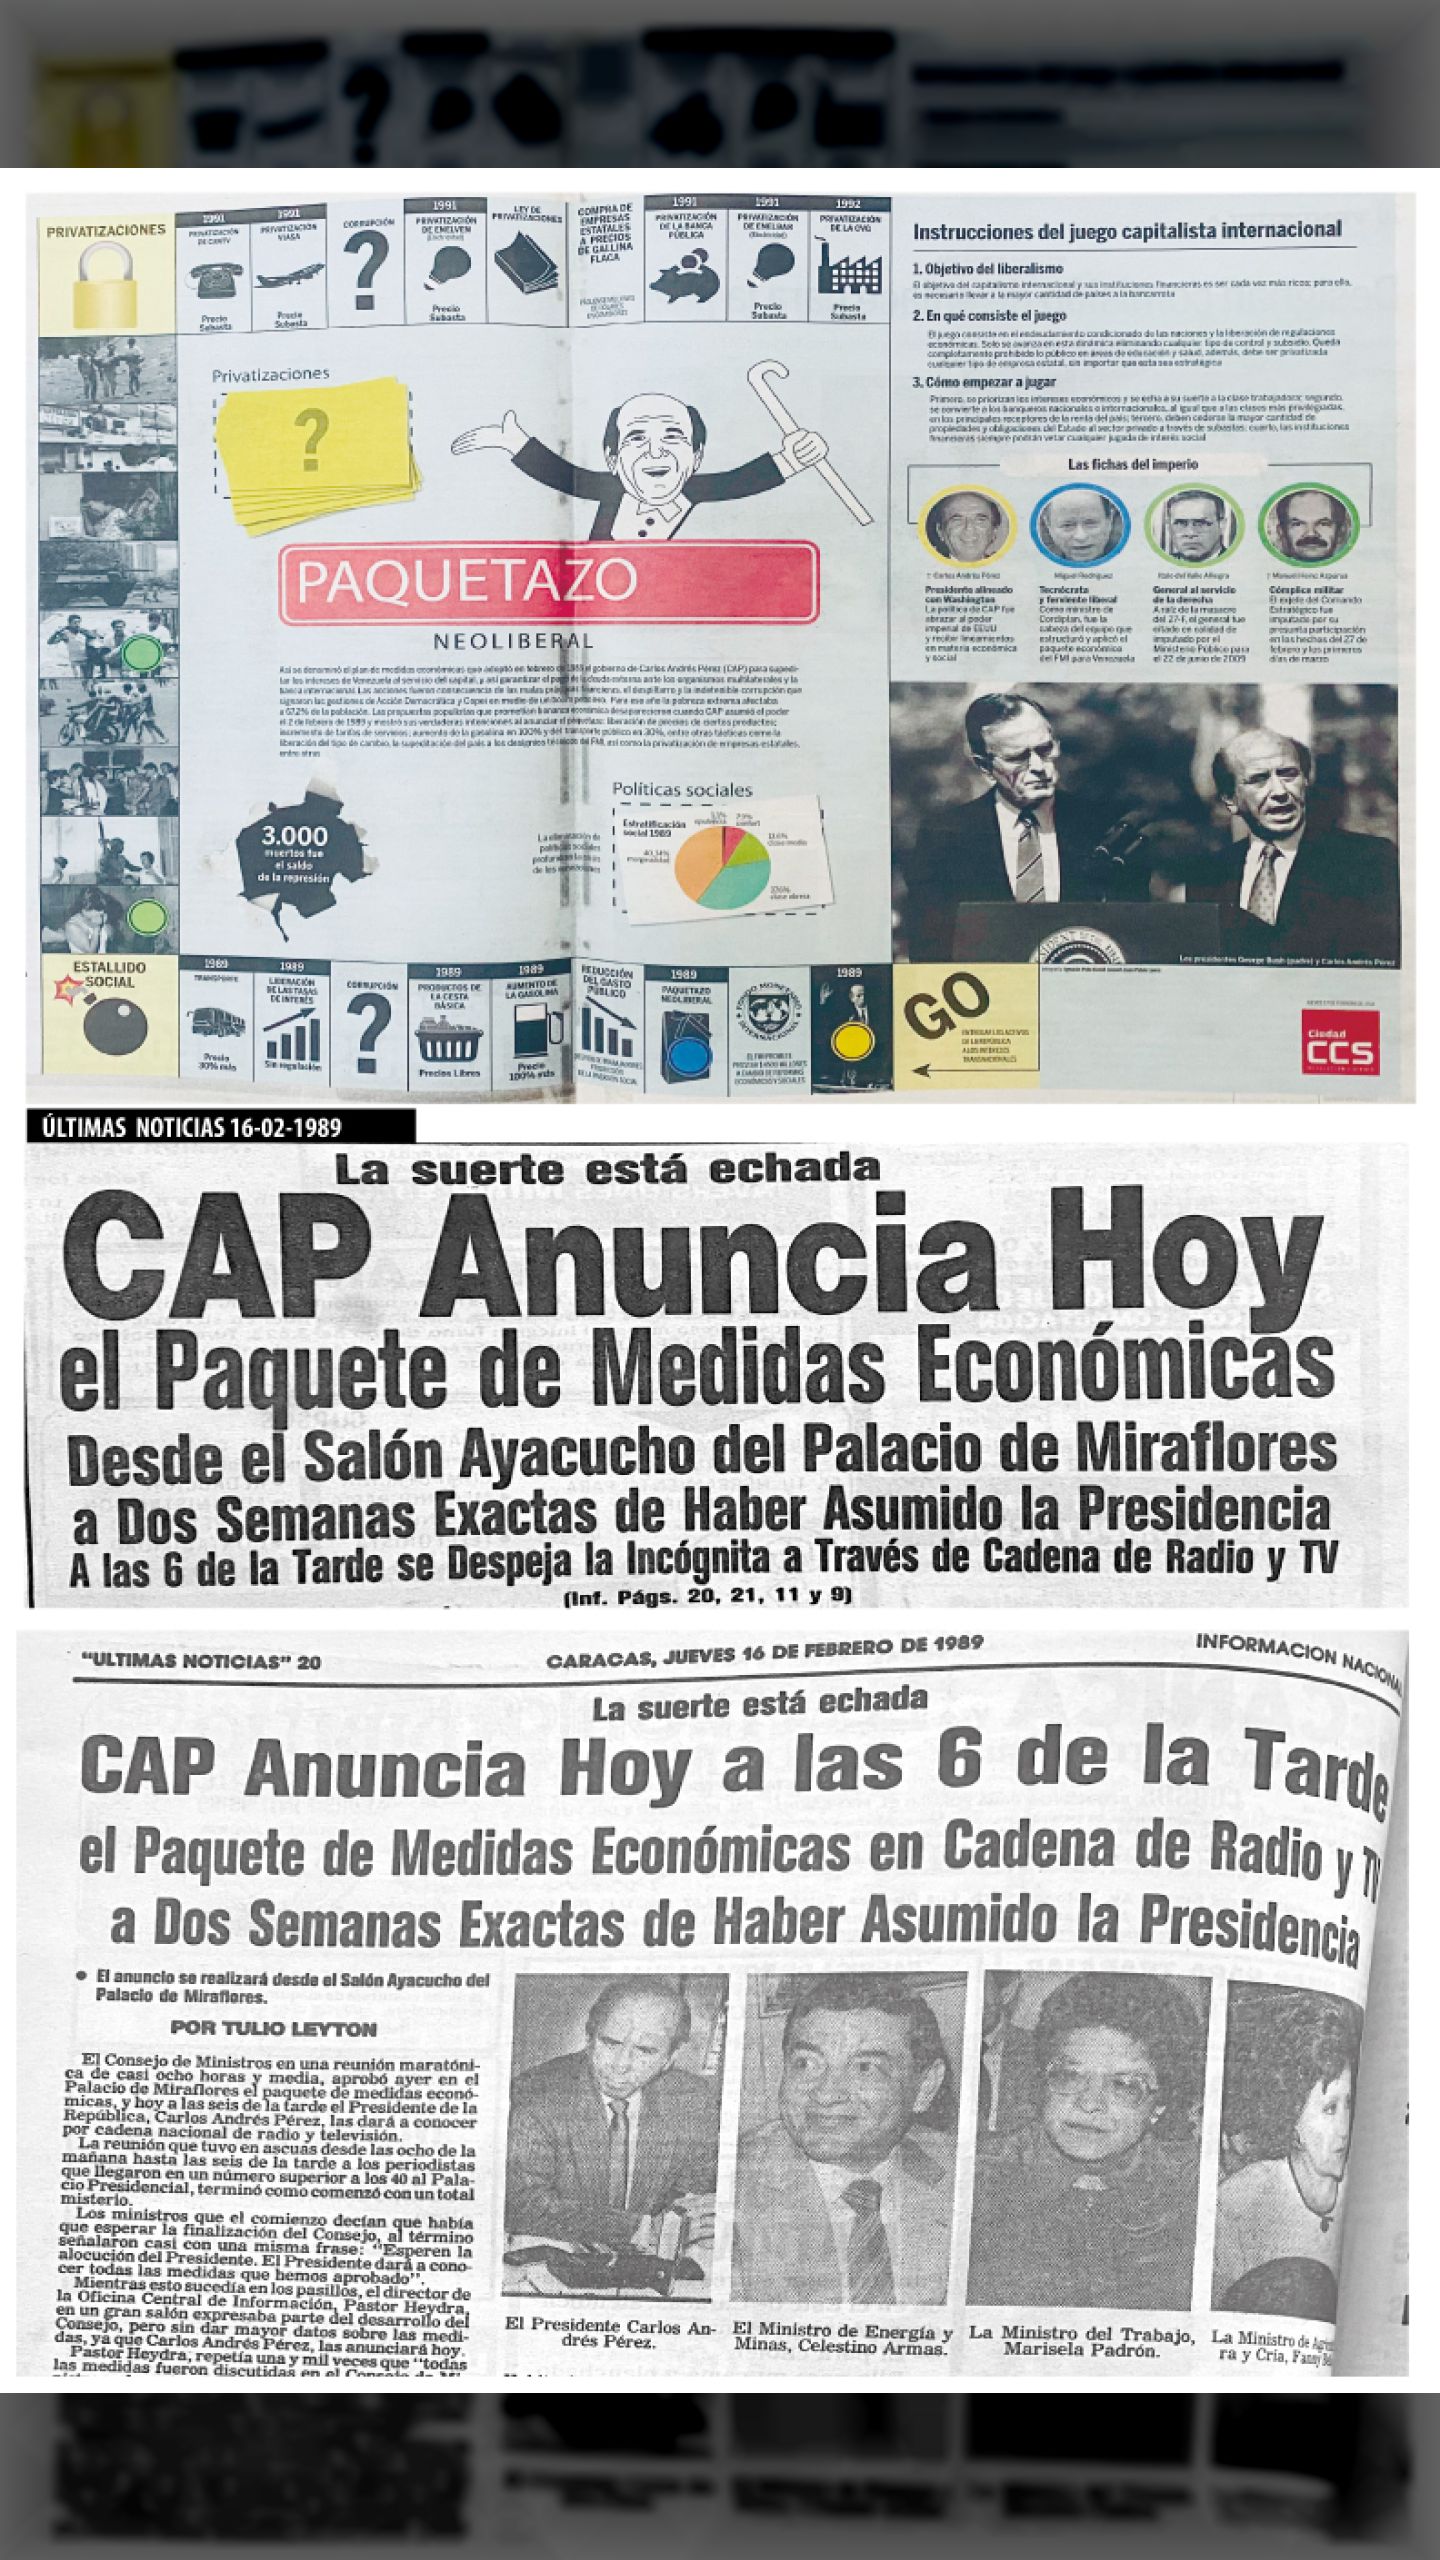 EL PAQUETAZO NEOLIBERAL DE CAP (Últimas Noticias, 16 de febrero de 1989 y Ciudad Caracas-CCS, 27 de febrero 2014)